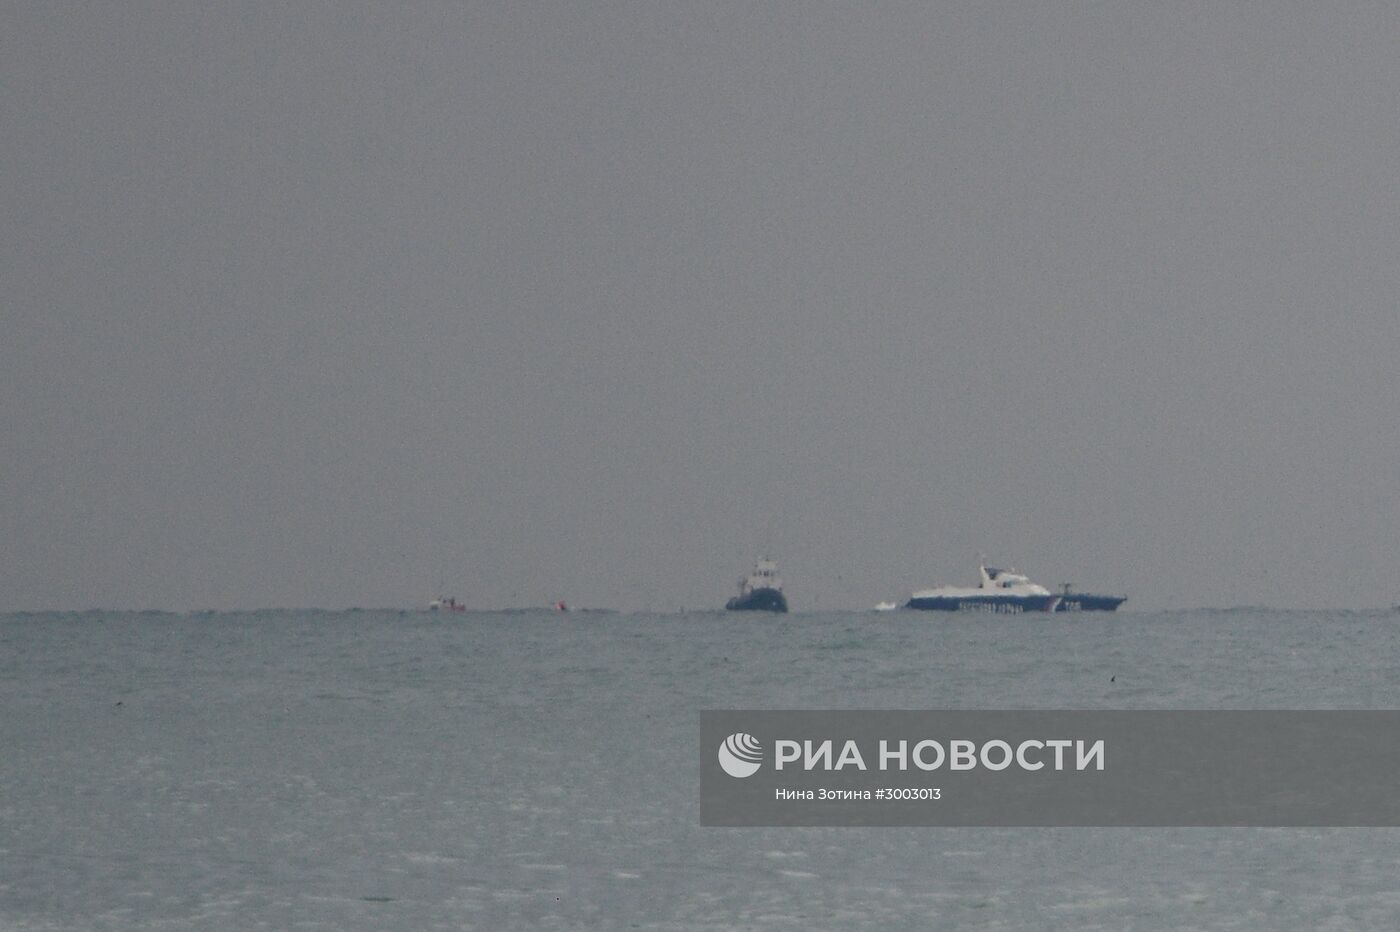 Поисково-спасательные работы на месте крушения самолёта Ту-154 Минобороны РФ в Сочи